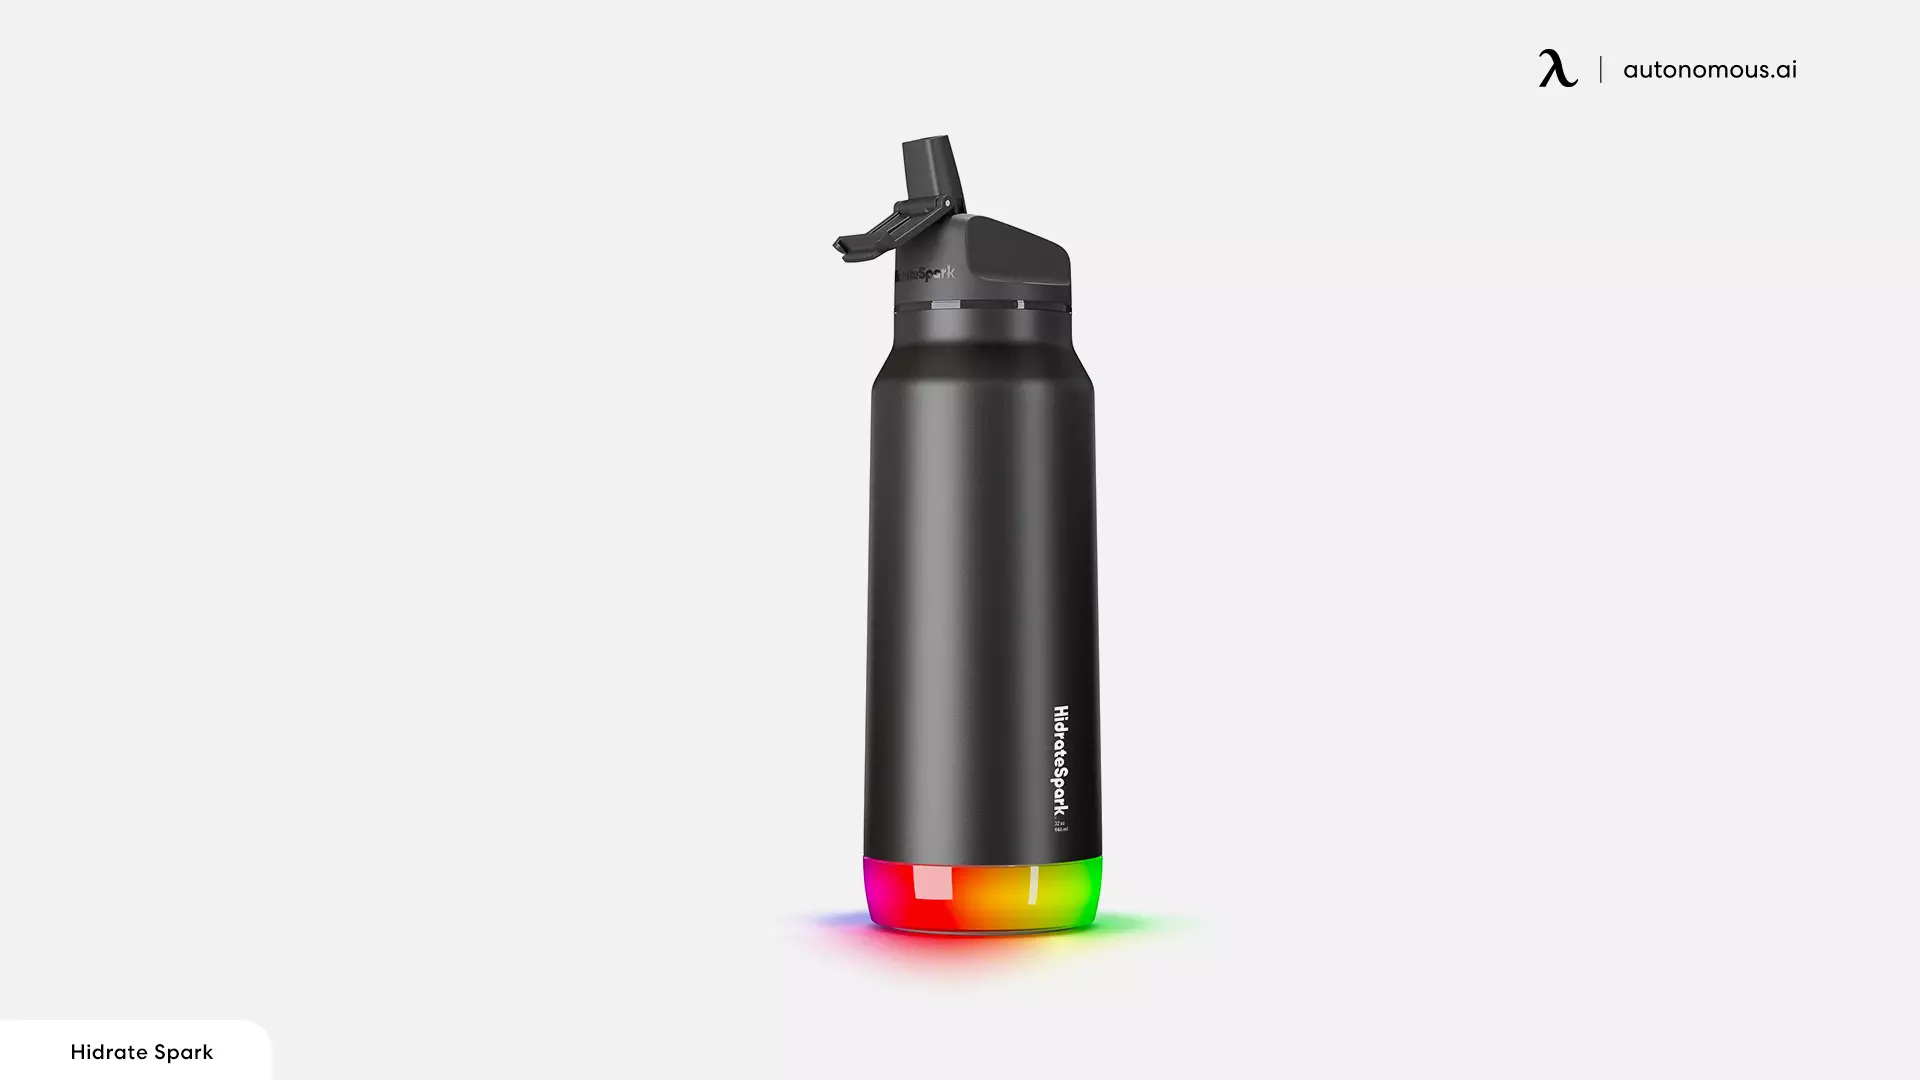 Hidrate Spark Pro Smart Water Bottle